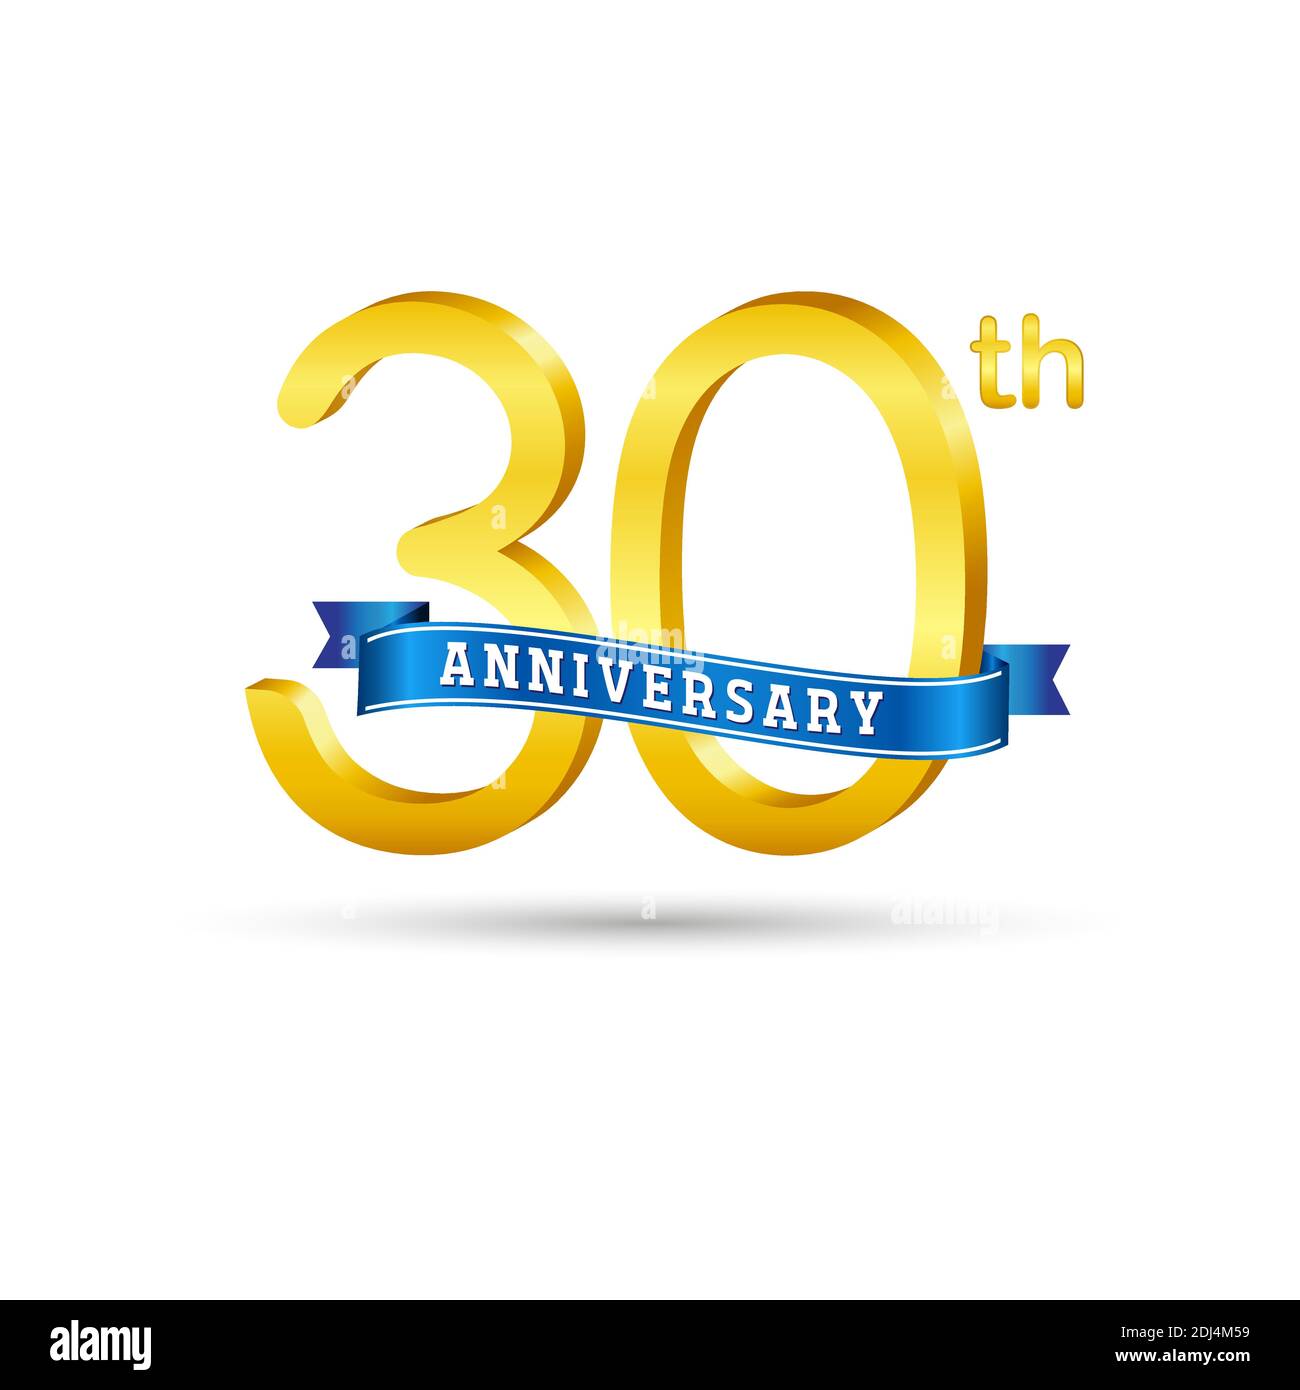 Logo du 30e anniversaire d'or avec ruban bleu isolé sur fond blanc. logo 3d Gold Anniversary Illustration de Vecteur